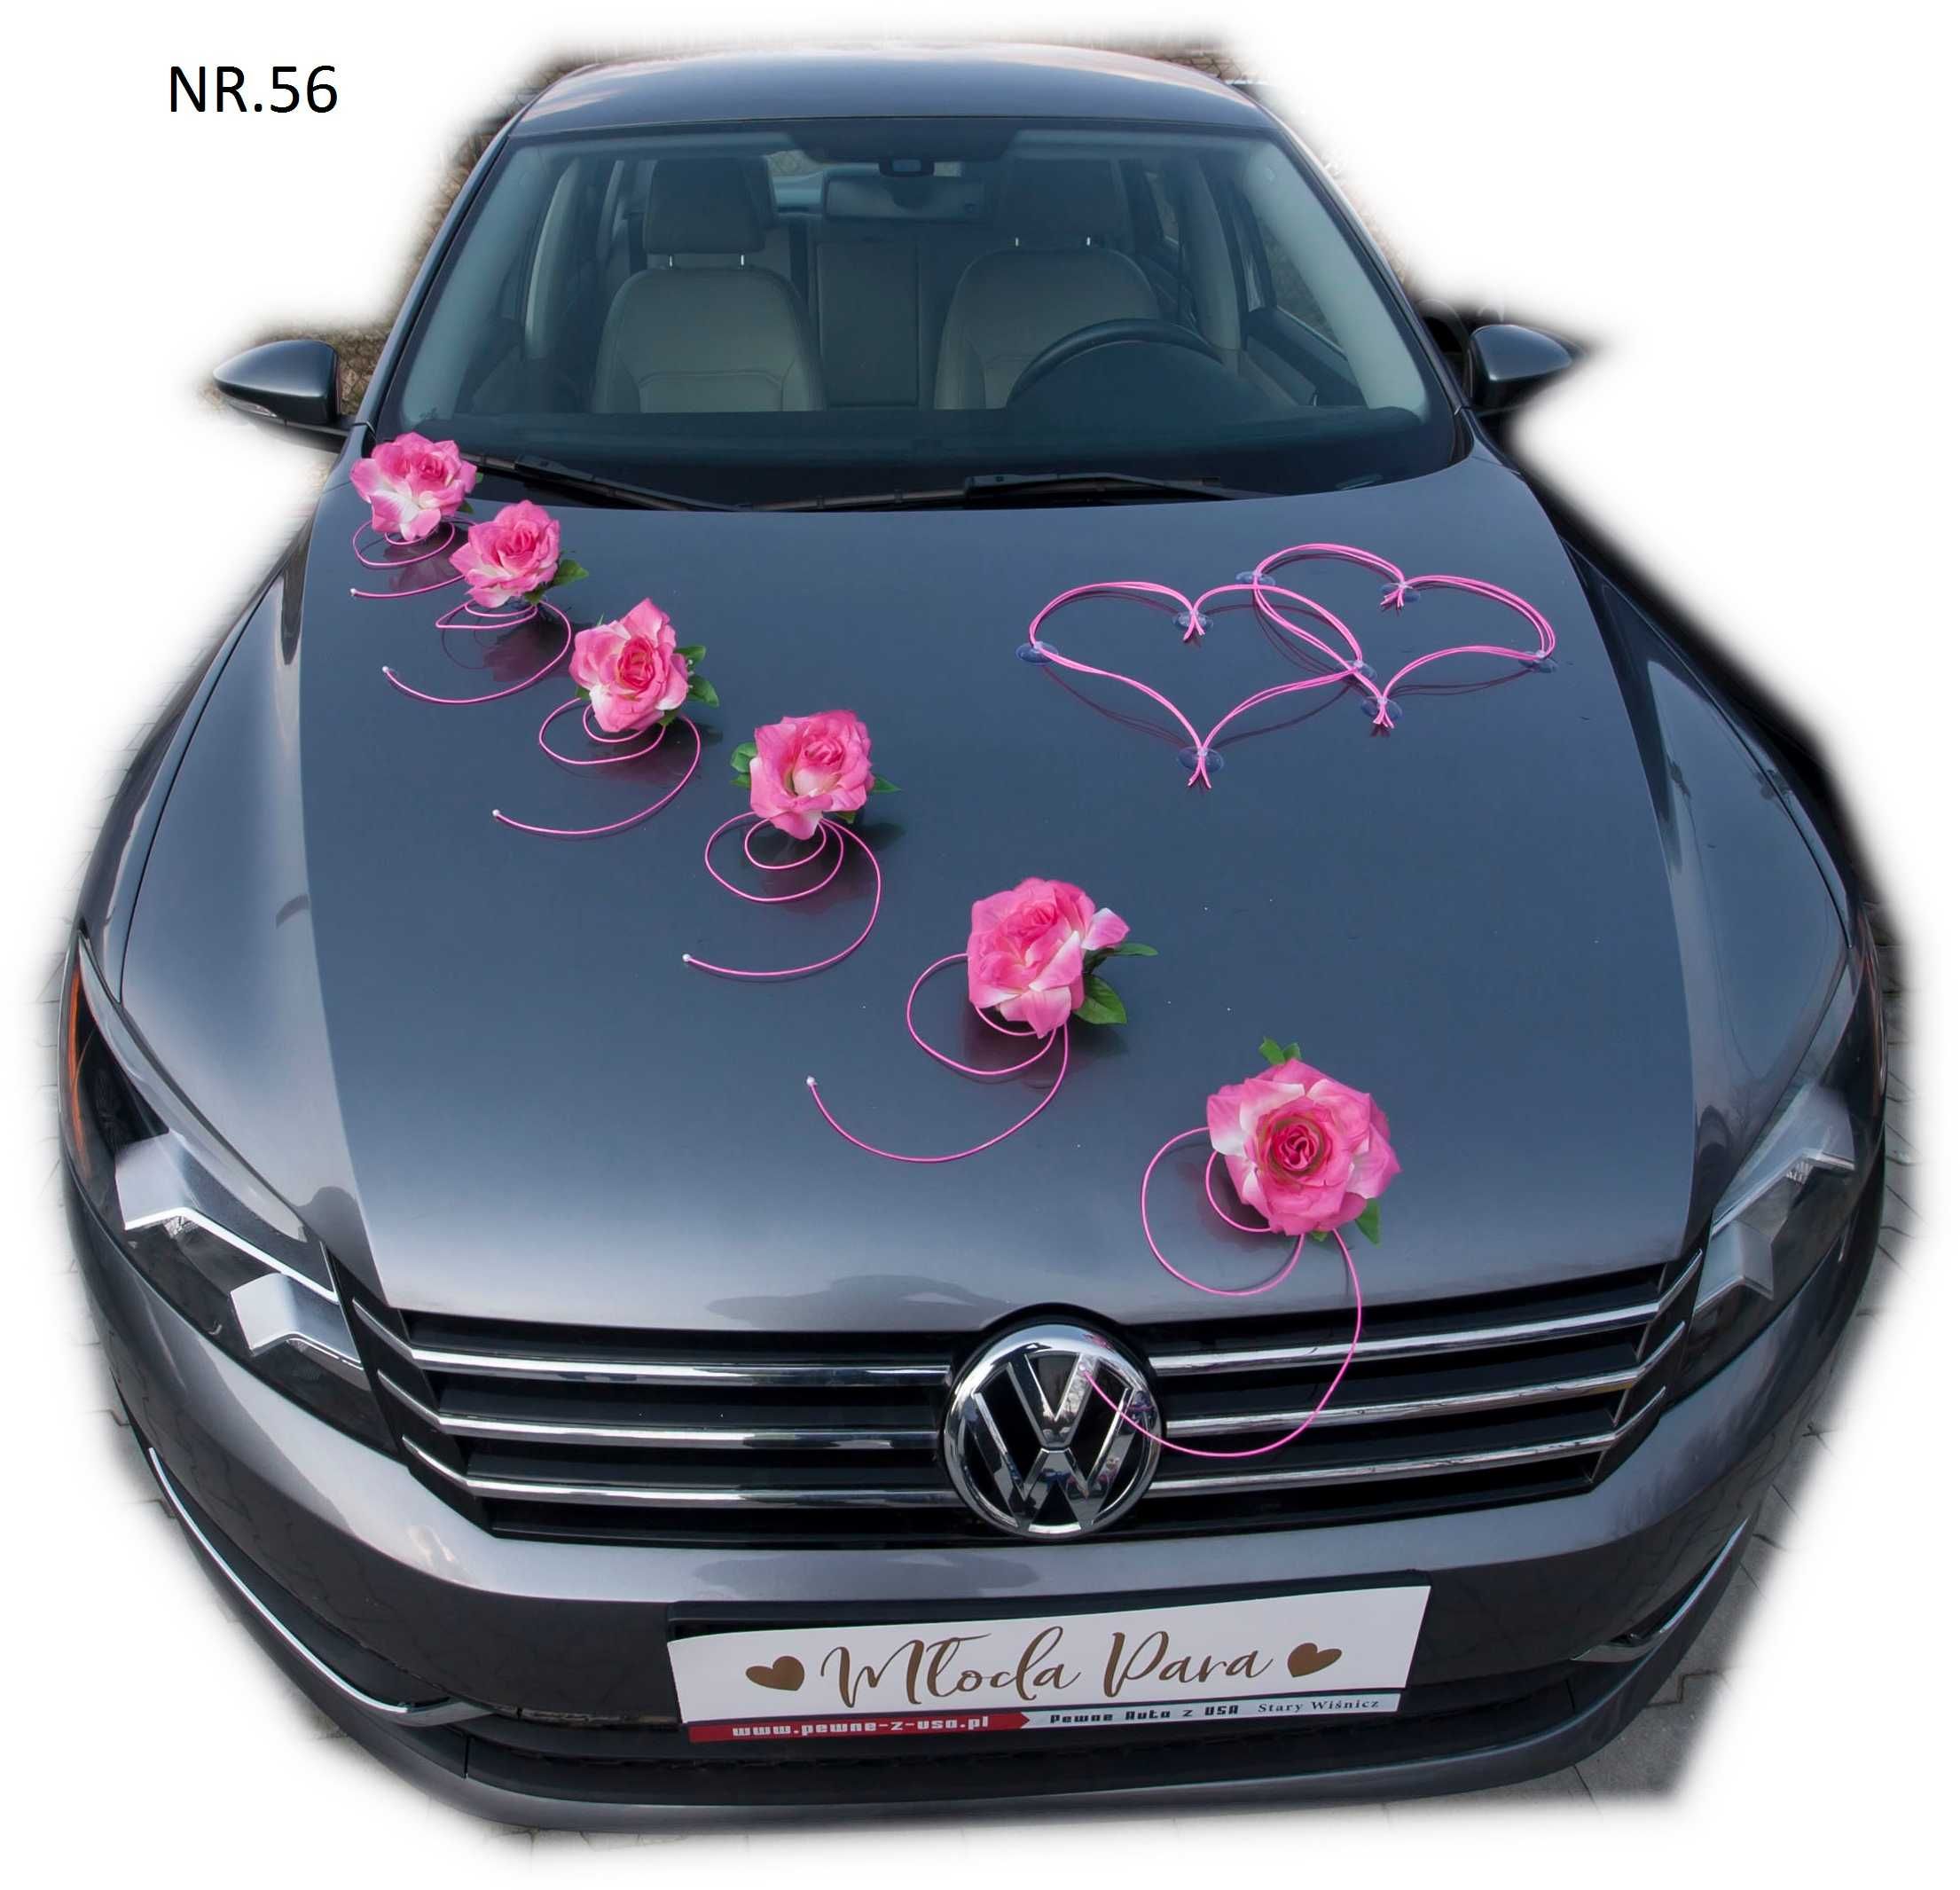 Dekoracja samochodu ozdoba na auto do ślubu różowa wzór 056